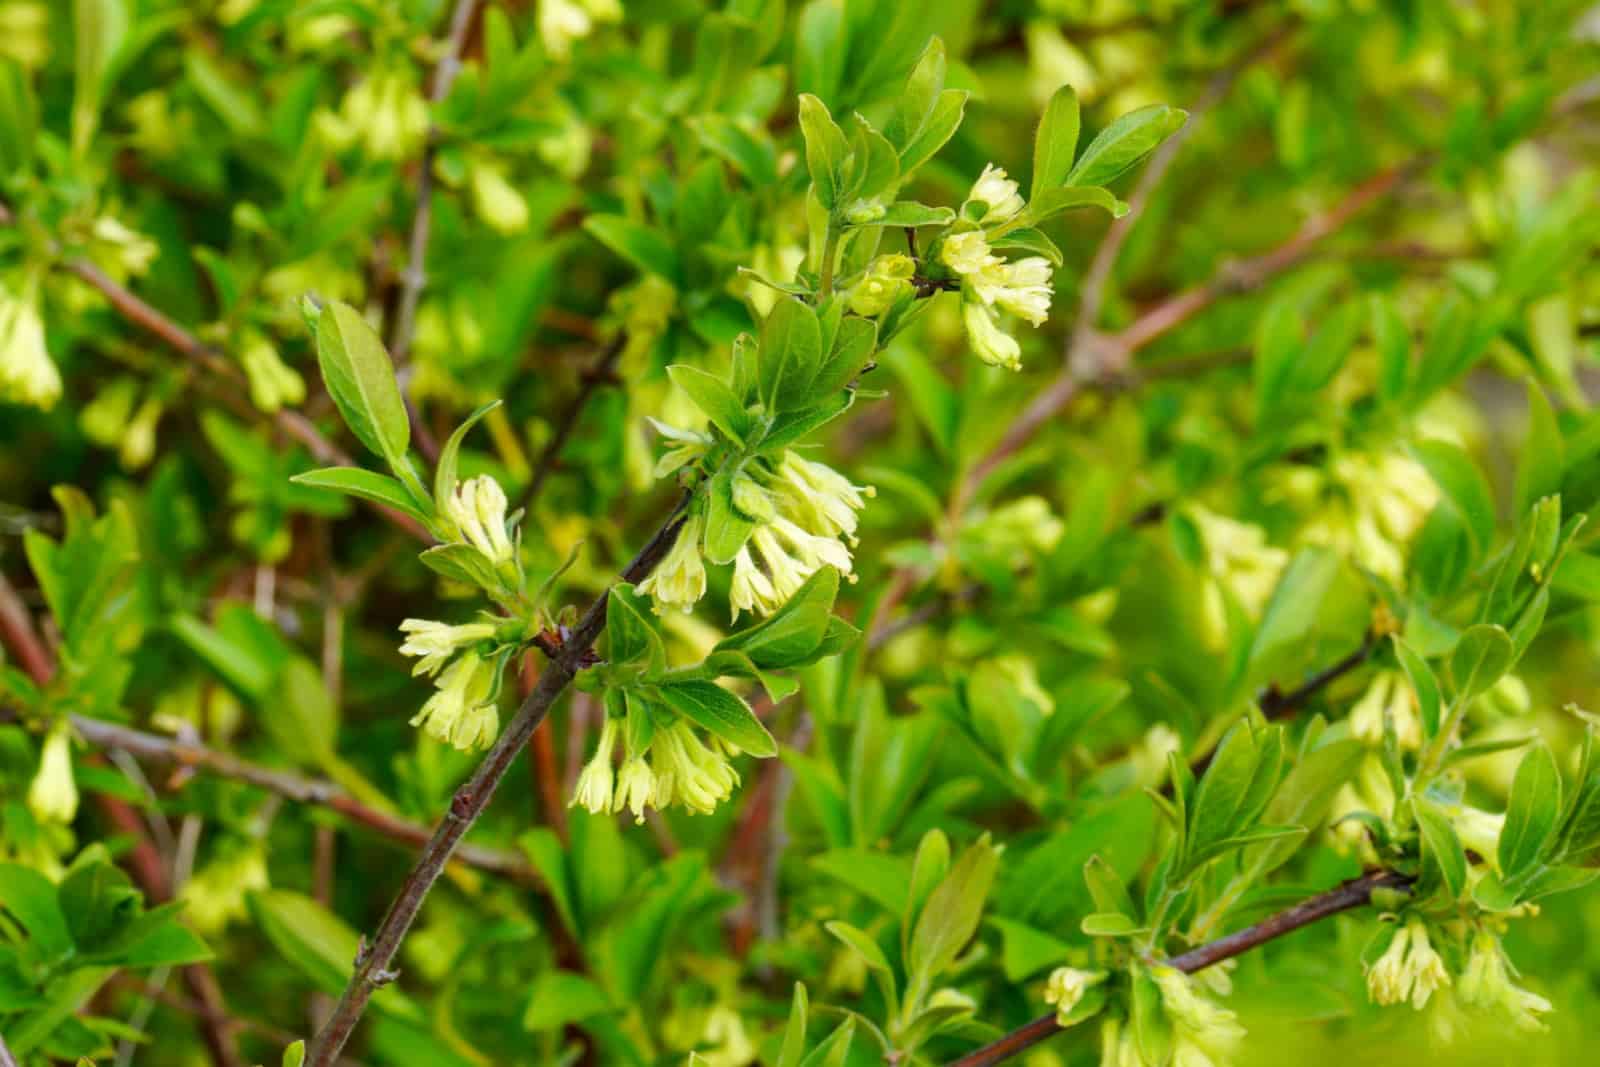 Honeysuckle vine leaves and flowers in spring.